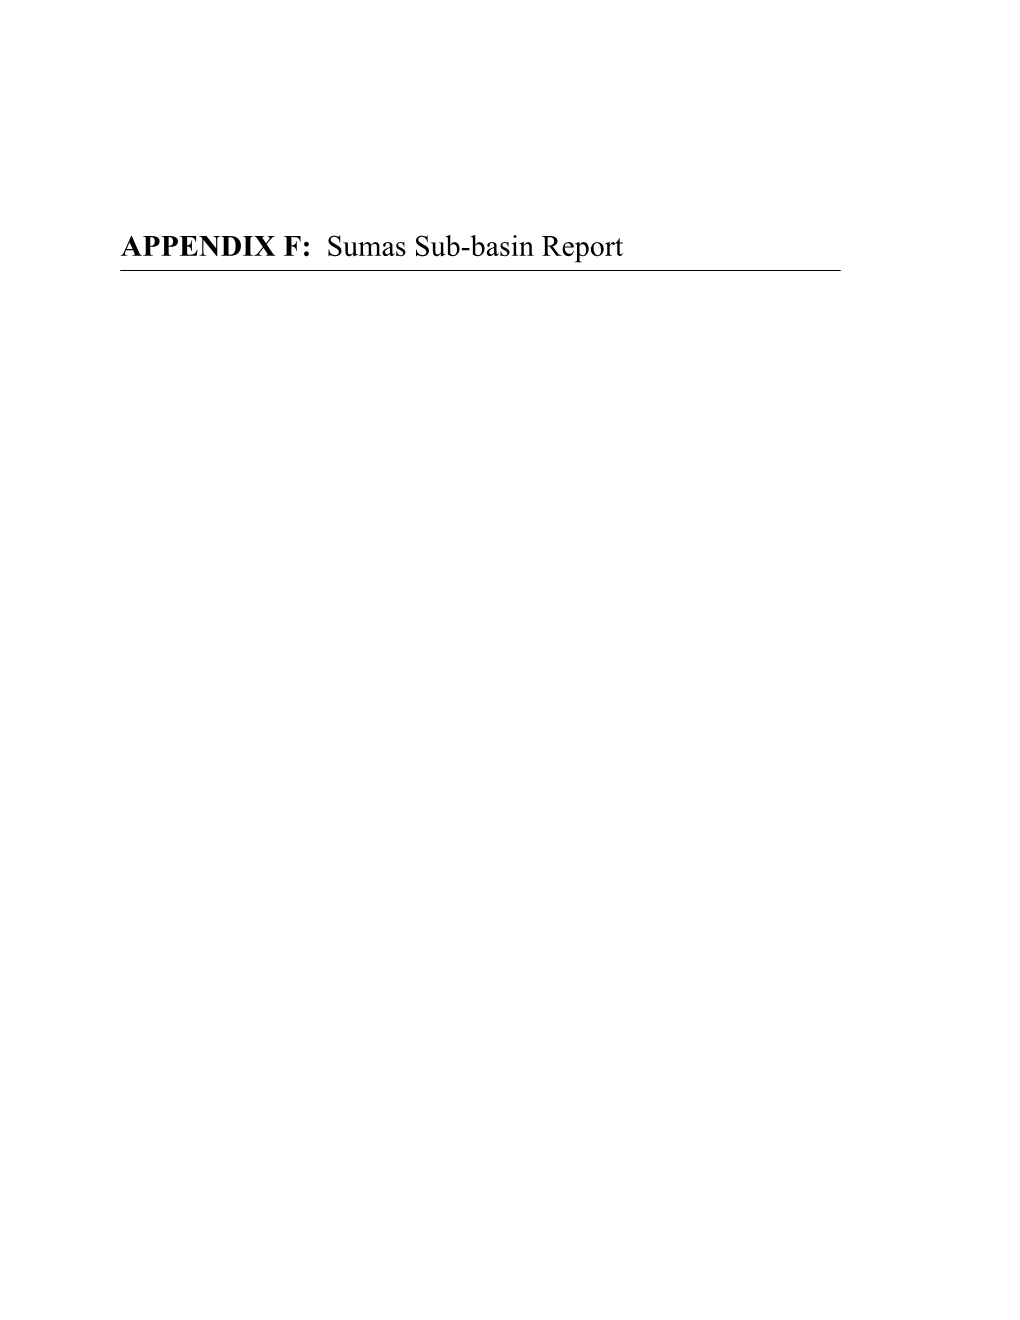 Sumas Sub-Basin Report